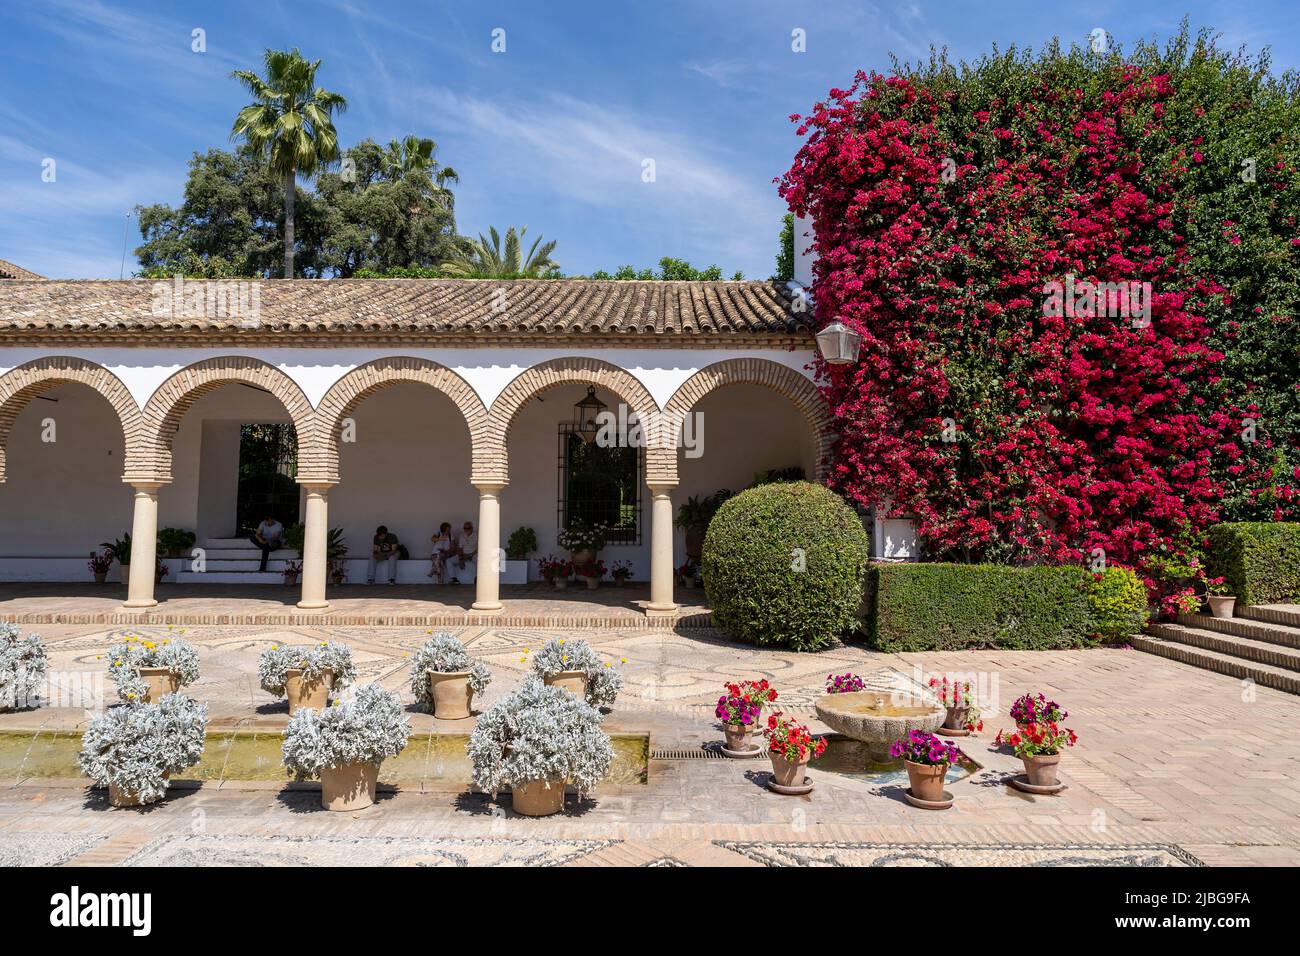 Palacio de Viana Cordoba. Renaissance palace with tranquil courtyards & formal garden. Stock Photo